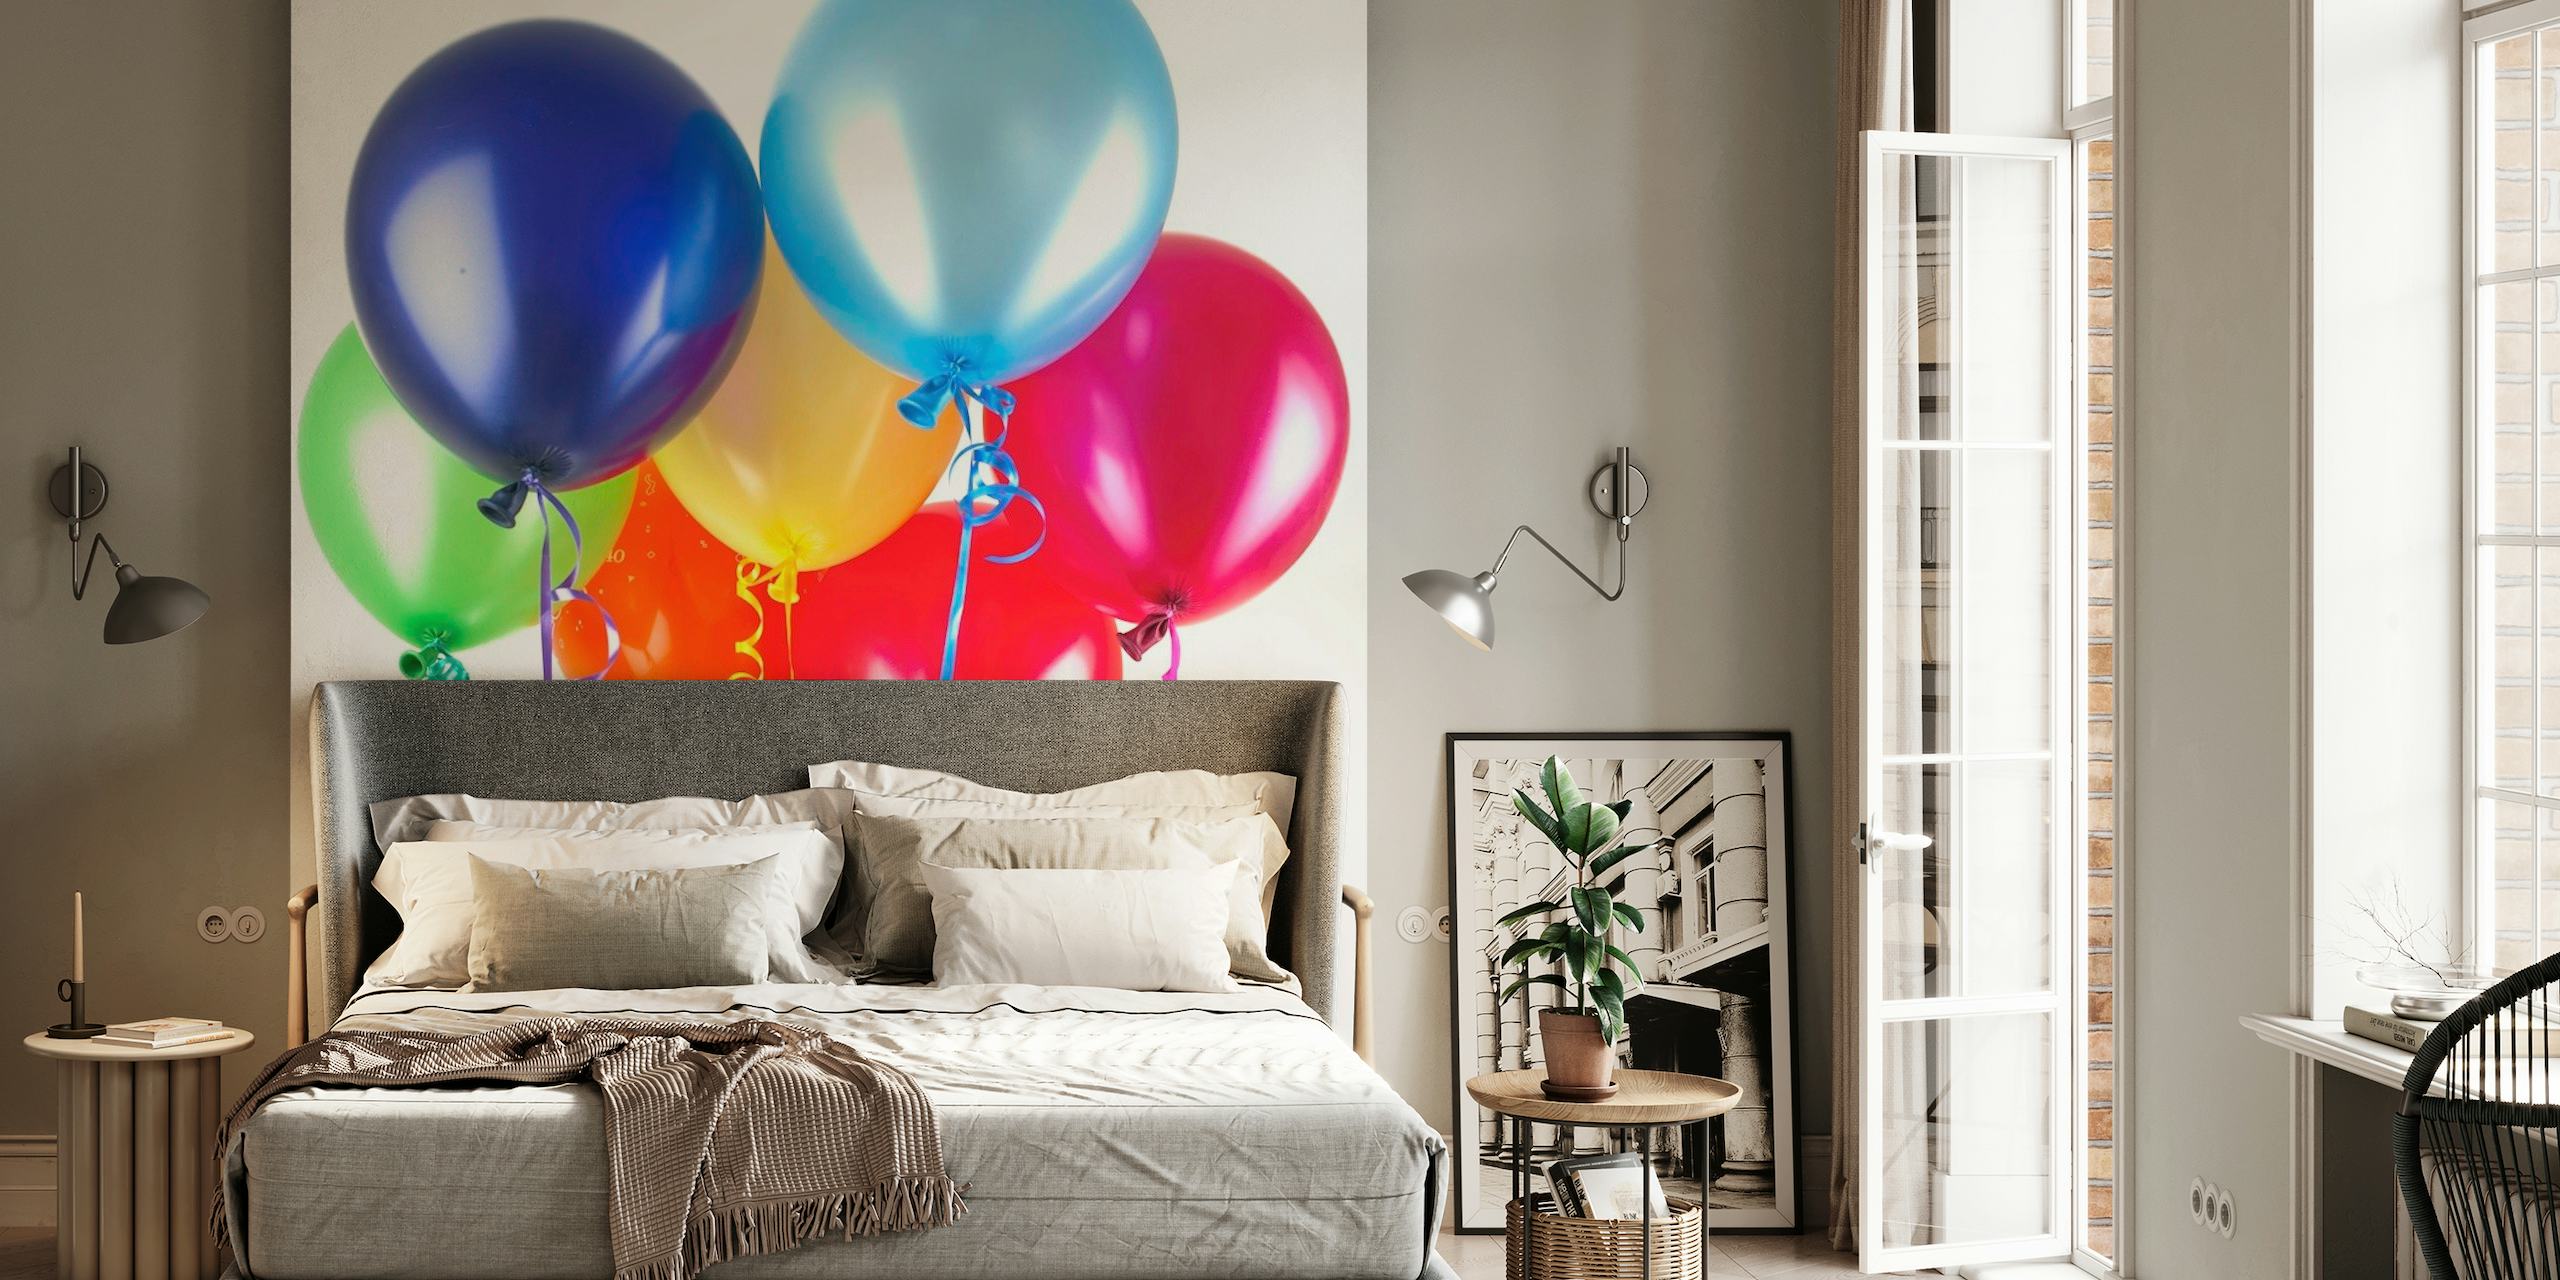 Una vibrante variedad de globos de colores en un mural de pared